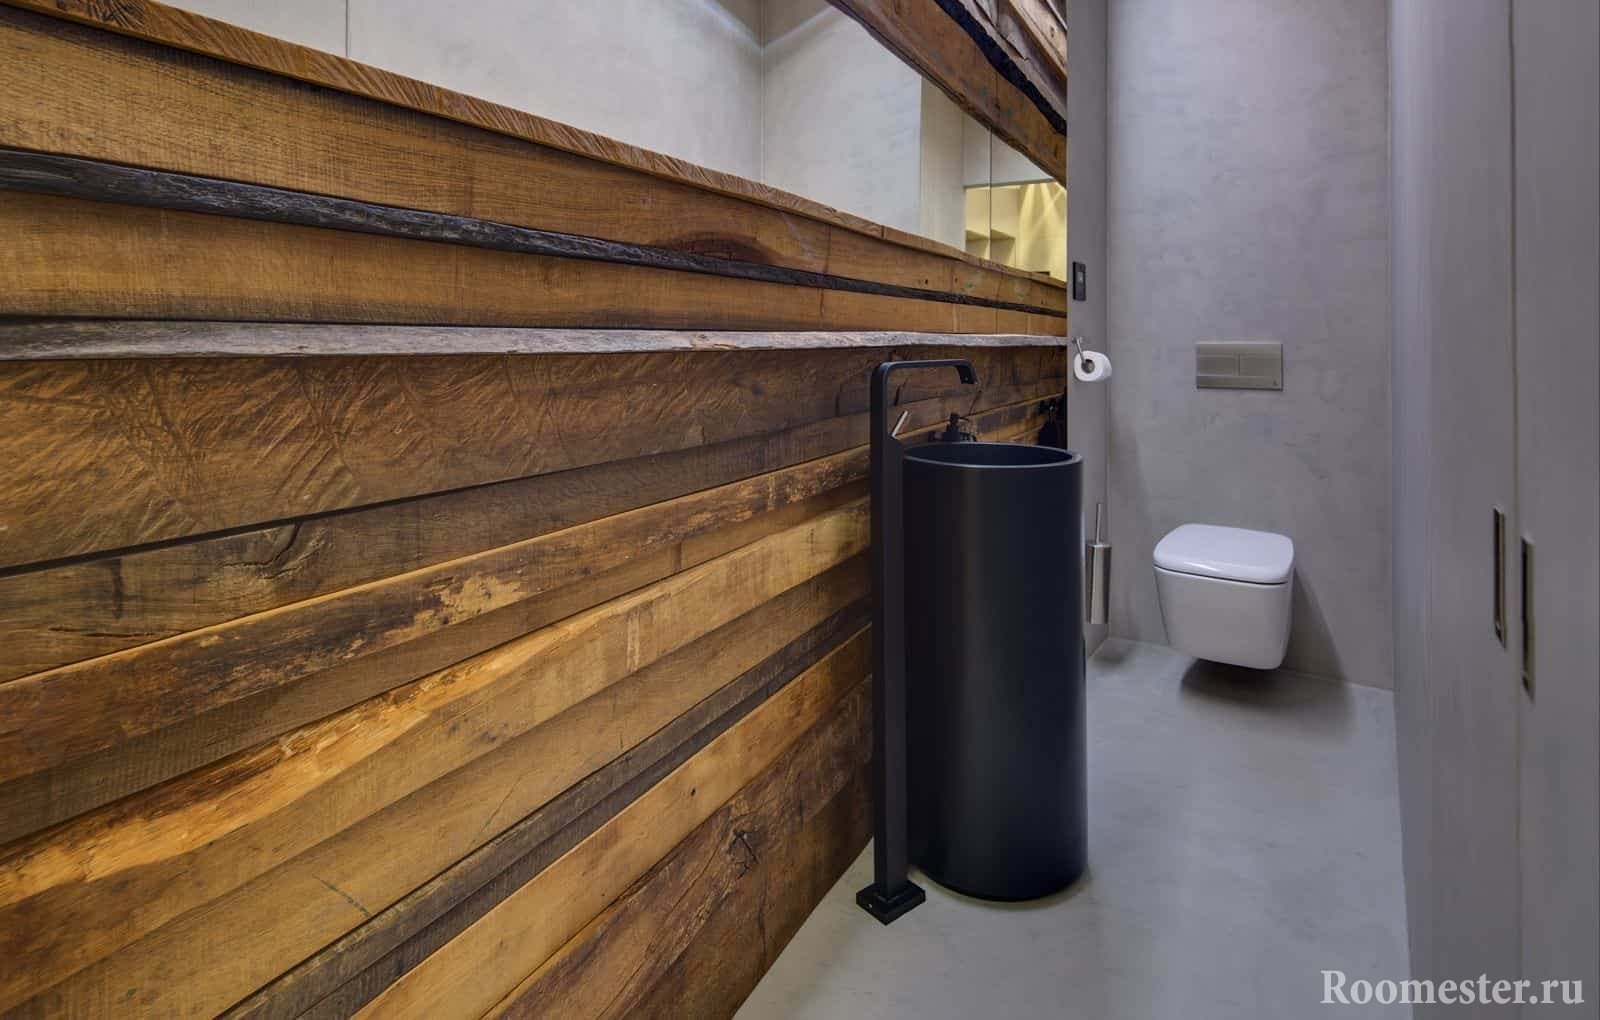 Современный дизайн маленького туалета в эко стиле с необычной раковиной